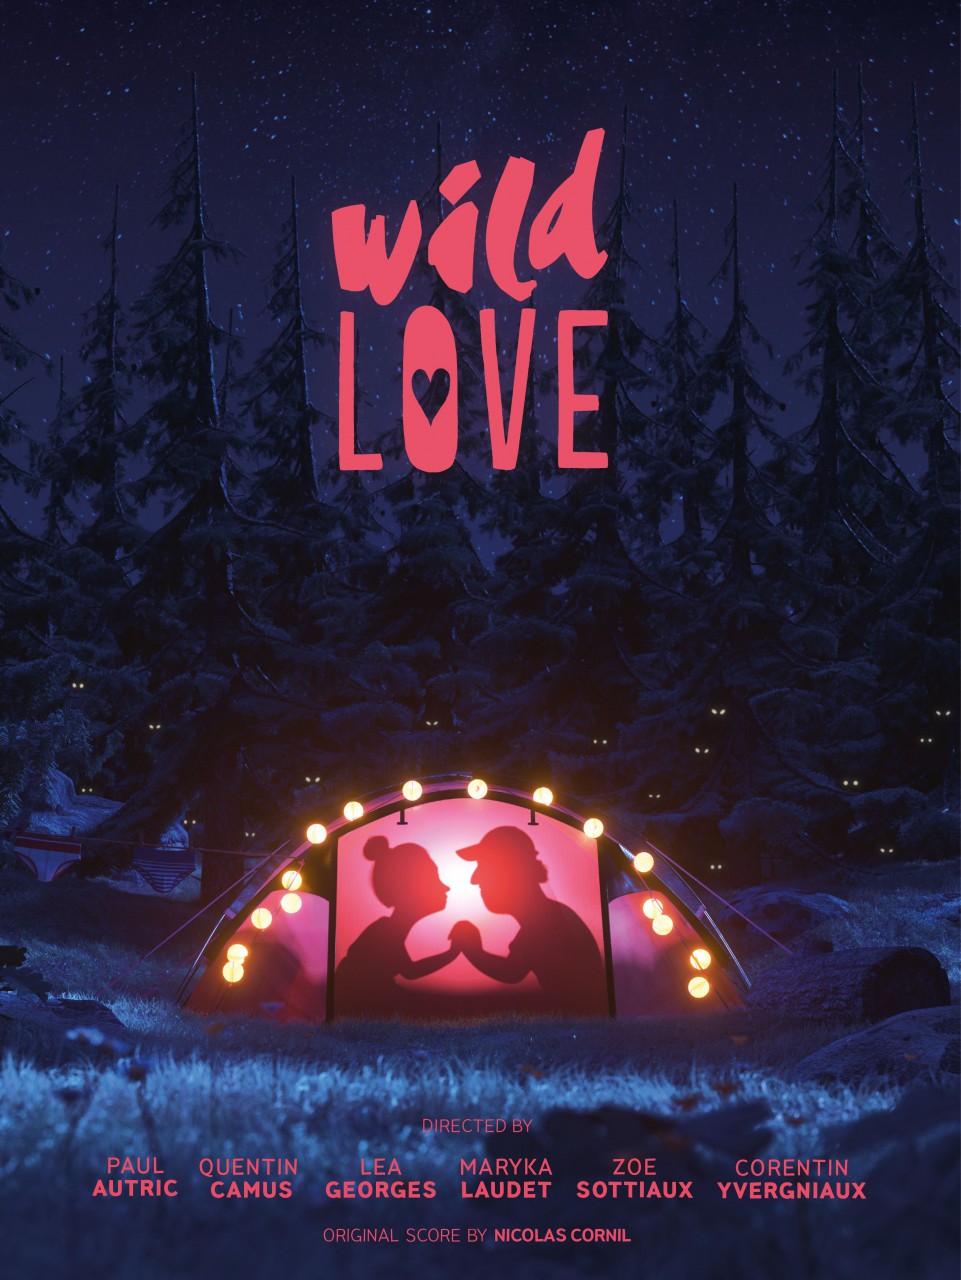 Wild love